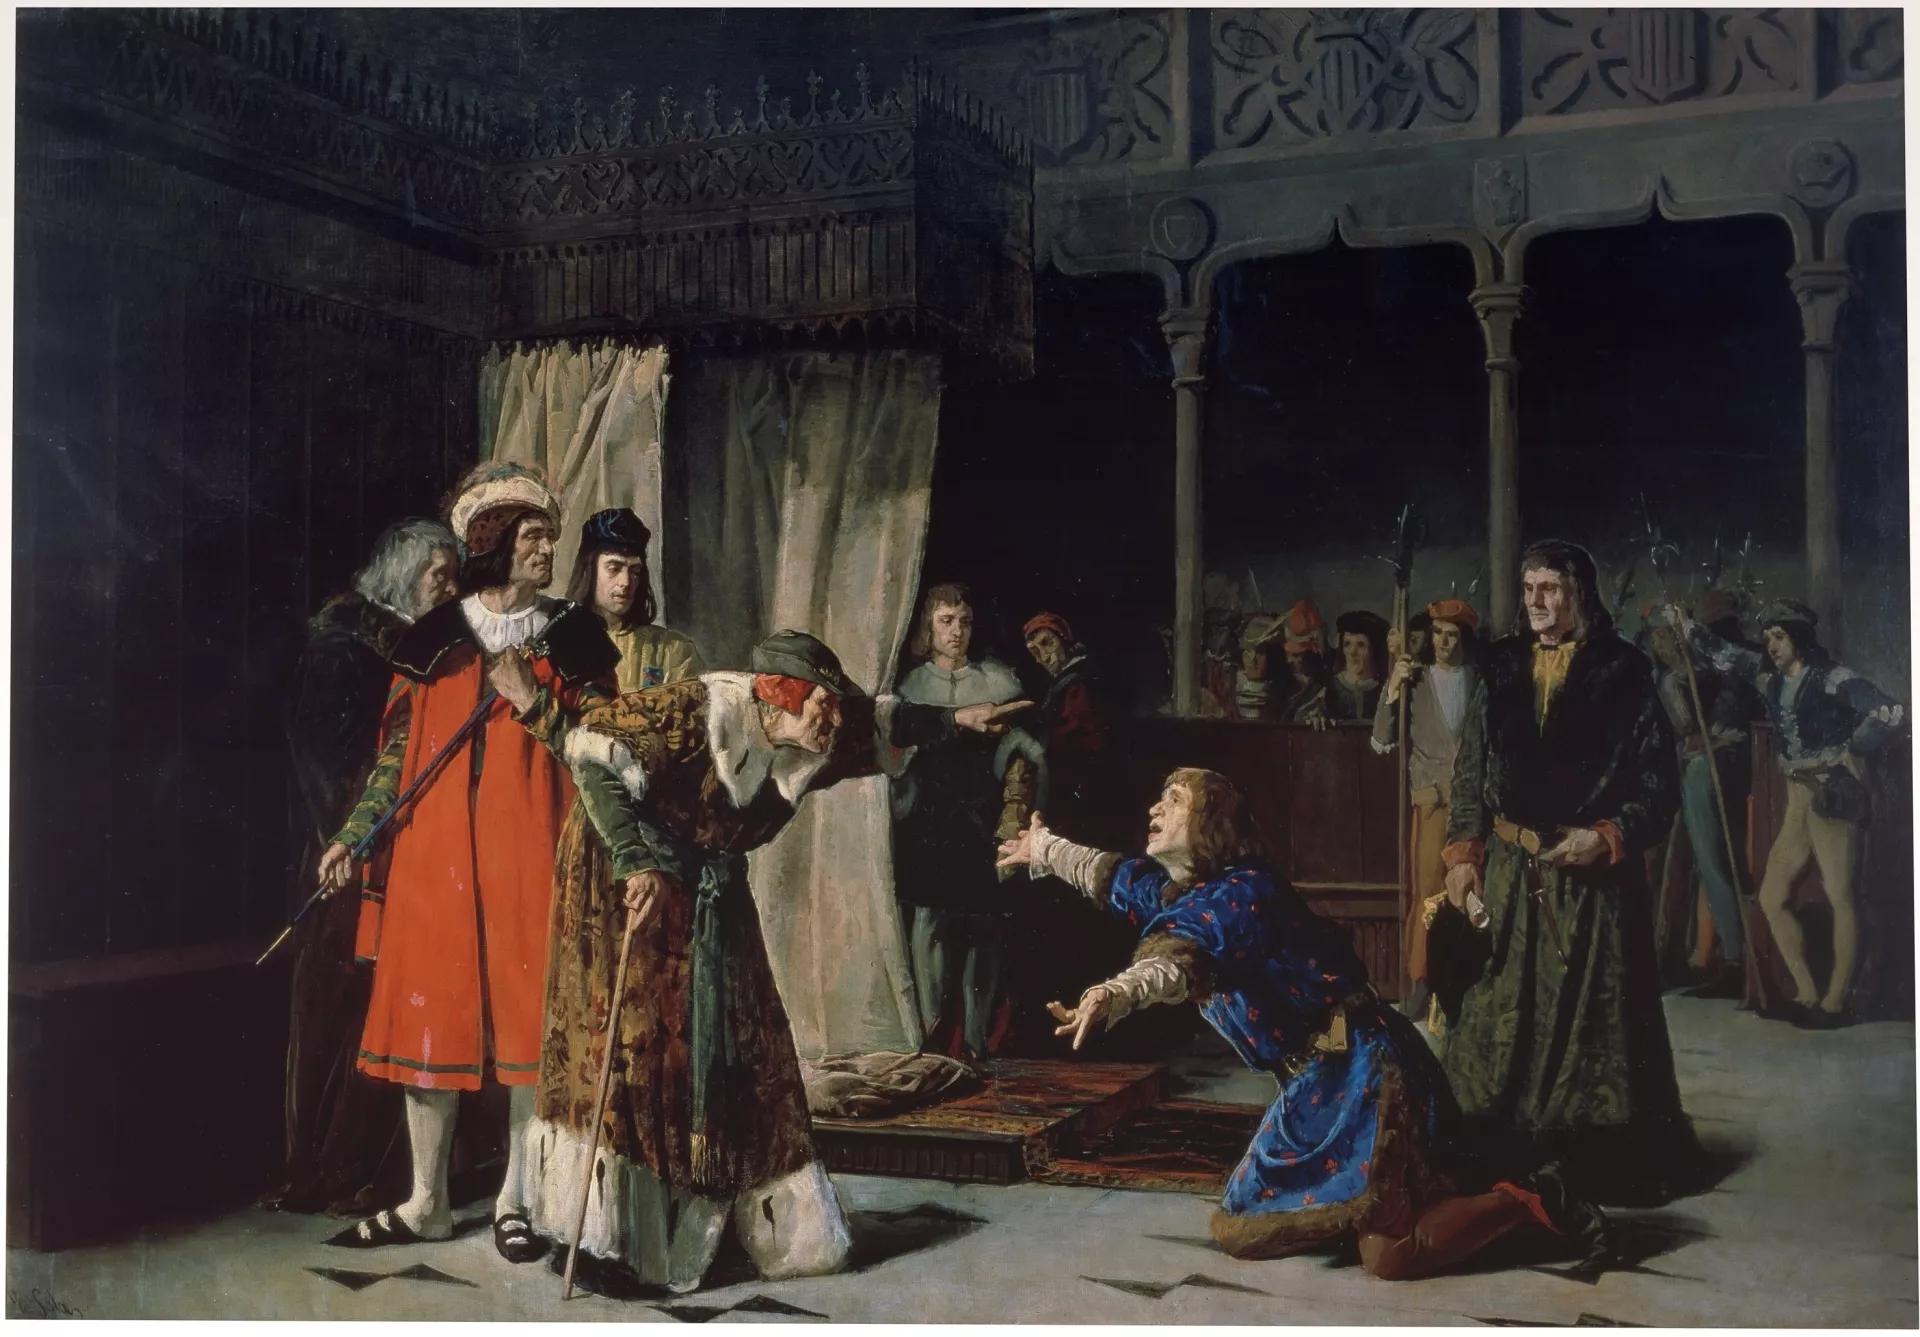 Carles de Viana havia d’heretar de la seva mare el regne de Navarra, però Joan II li va usurpar la corona. Carles es va convertir aleshores en un príncep errant